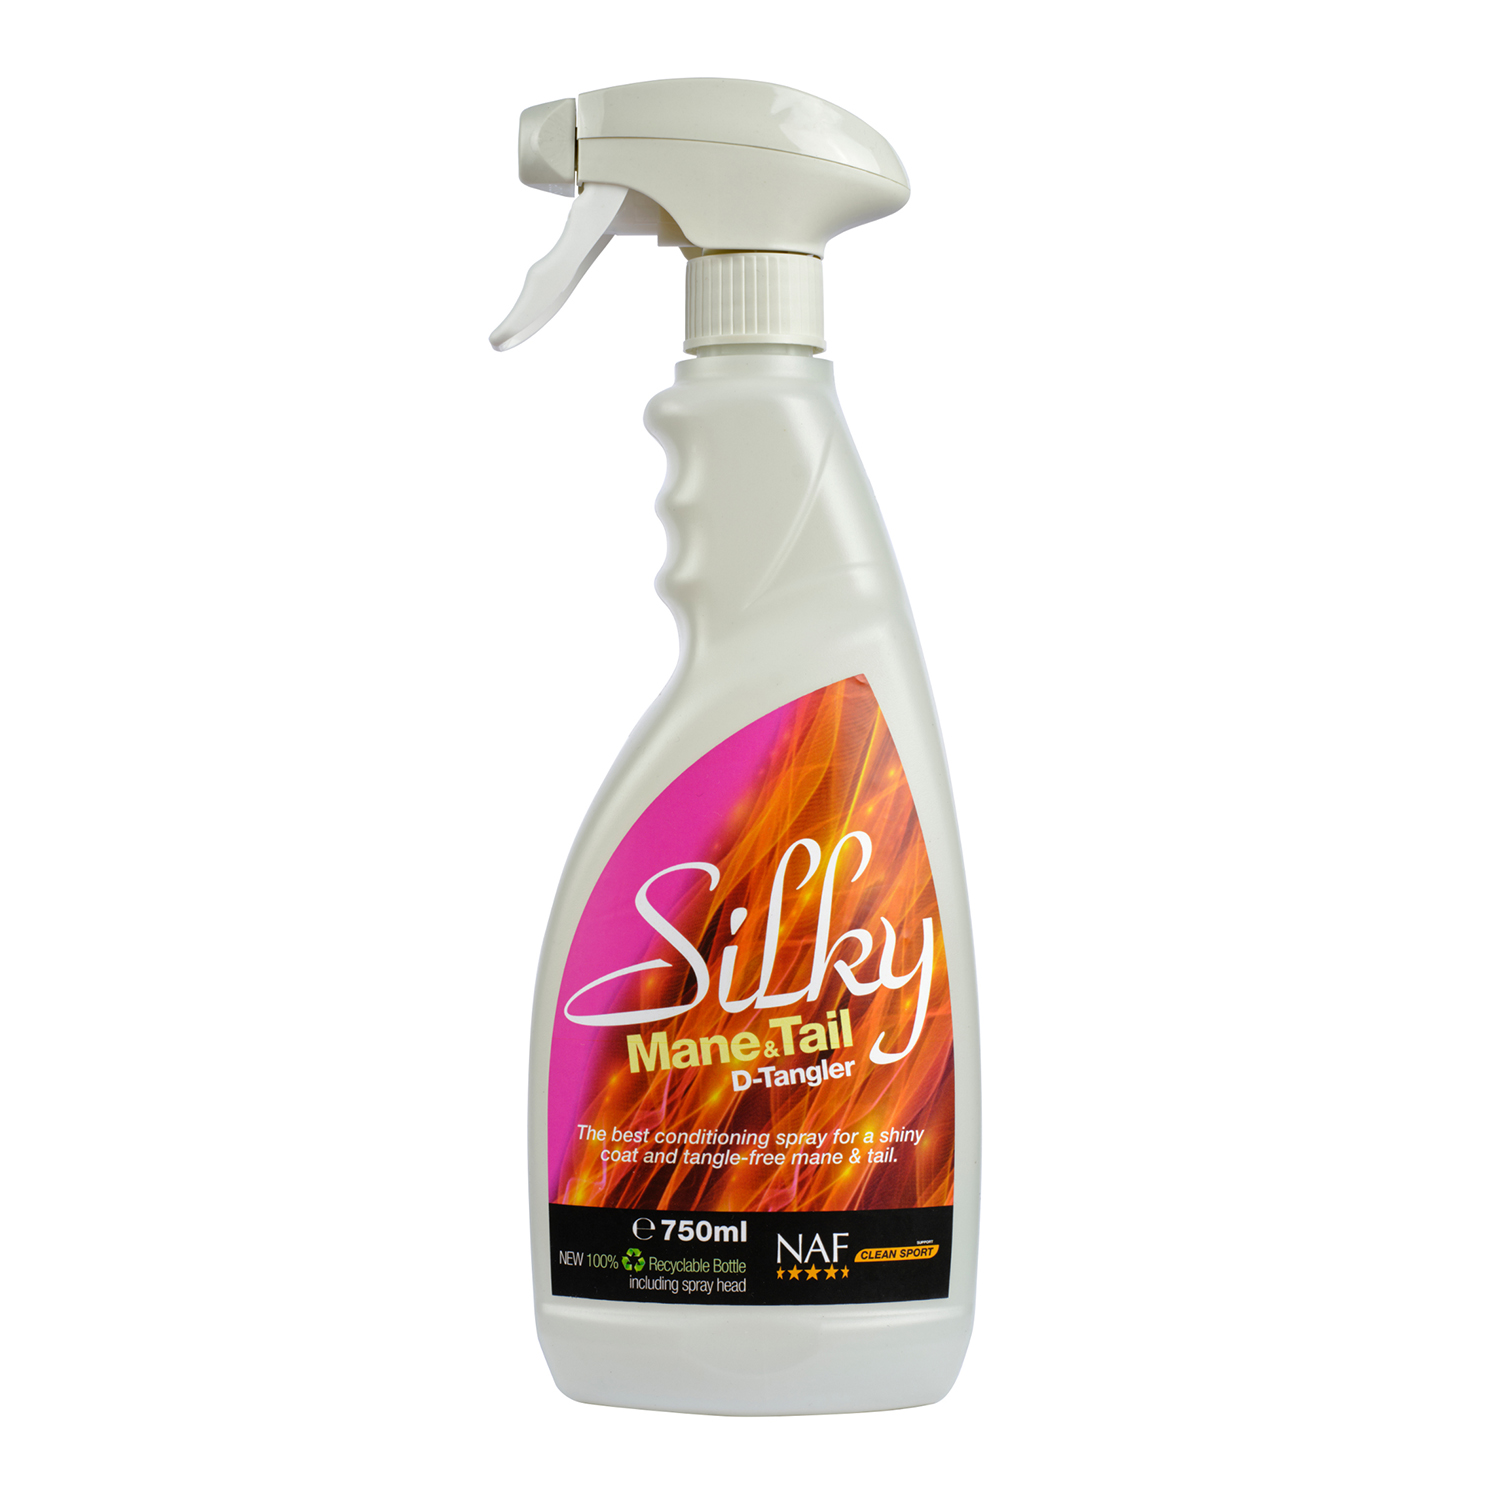 Silky mane & tail spray naf